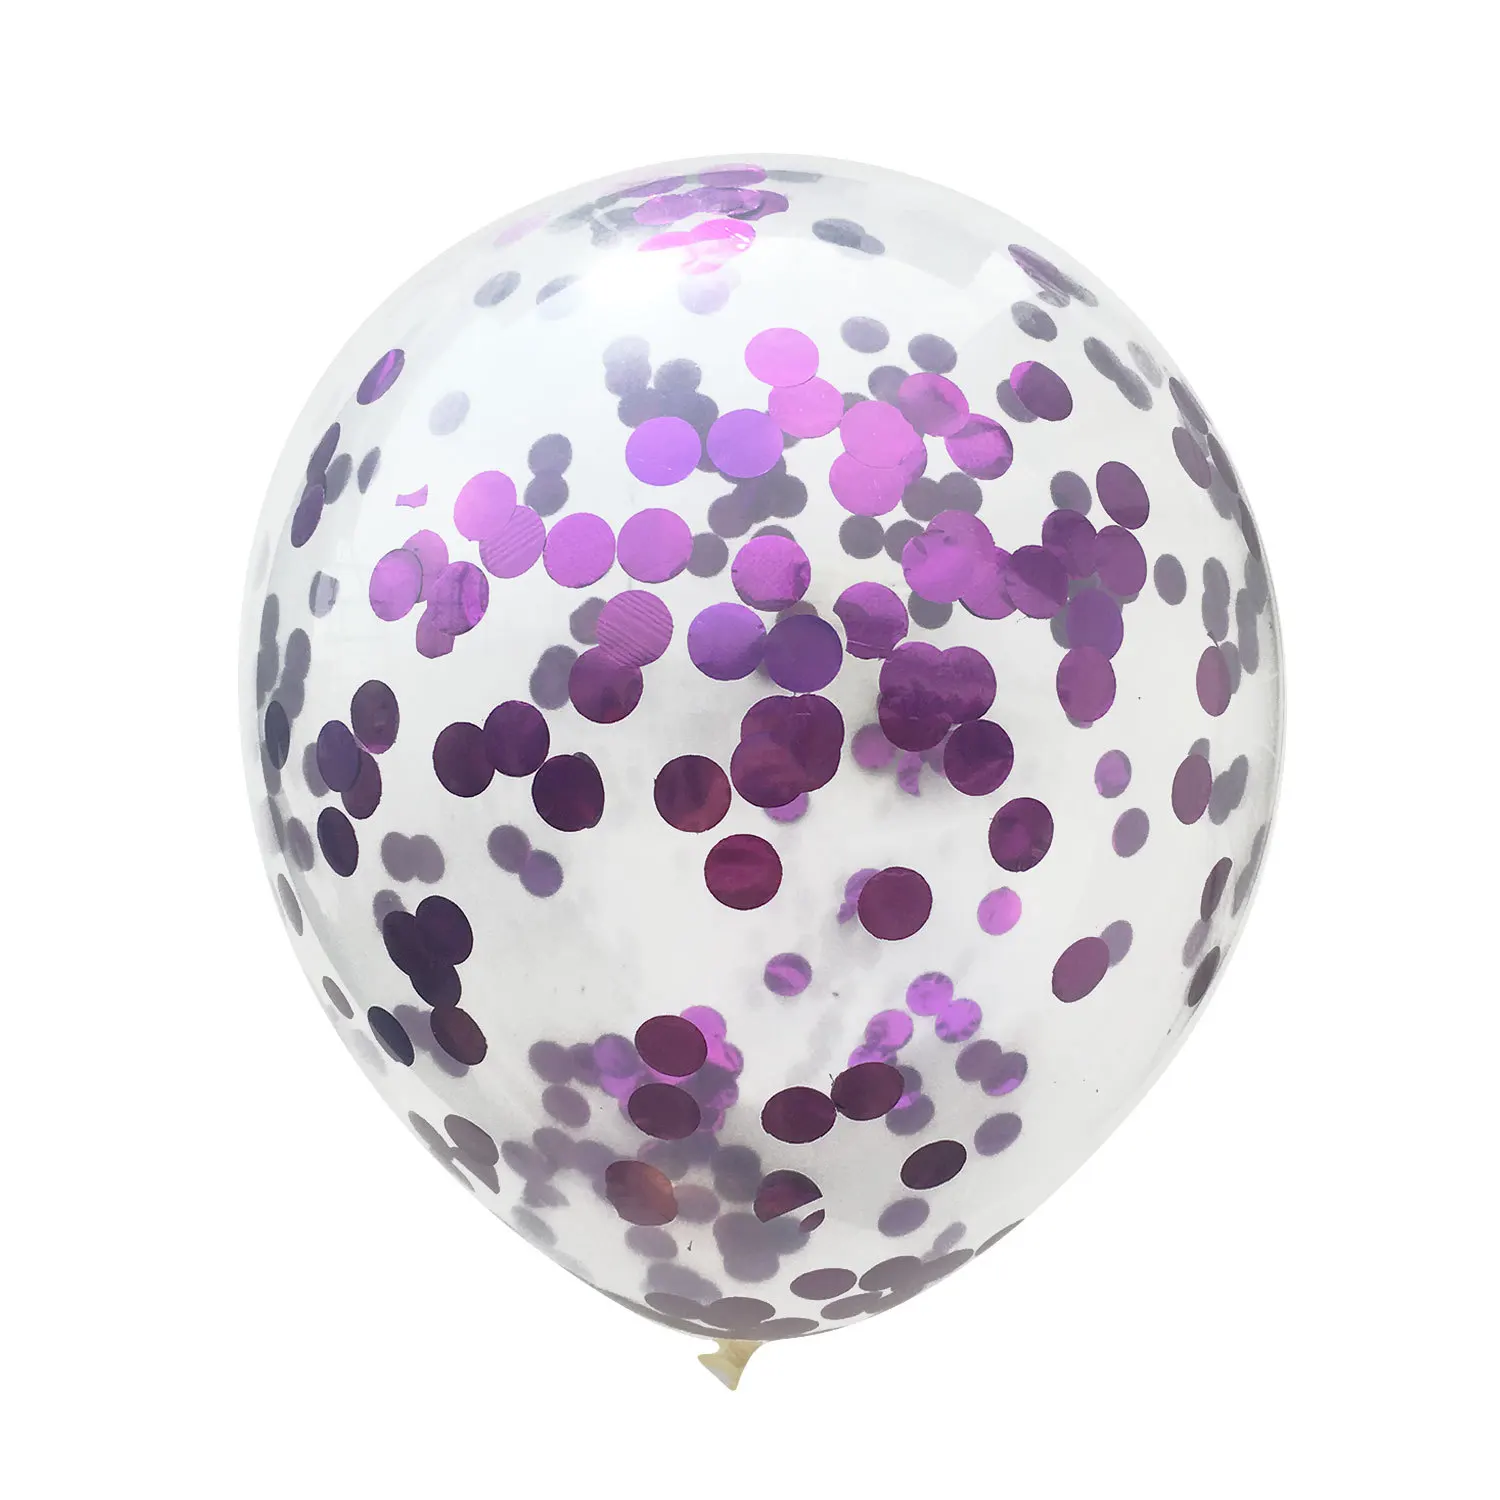 5 шт. 12 дюймов прозрачные латексные шары конфетти для украшения свадьбы День рождения украшения детский душ надувные воздушные шары - Цвет: Фиолетовый